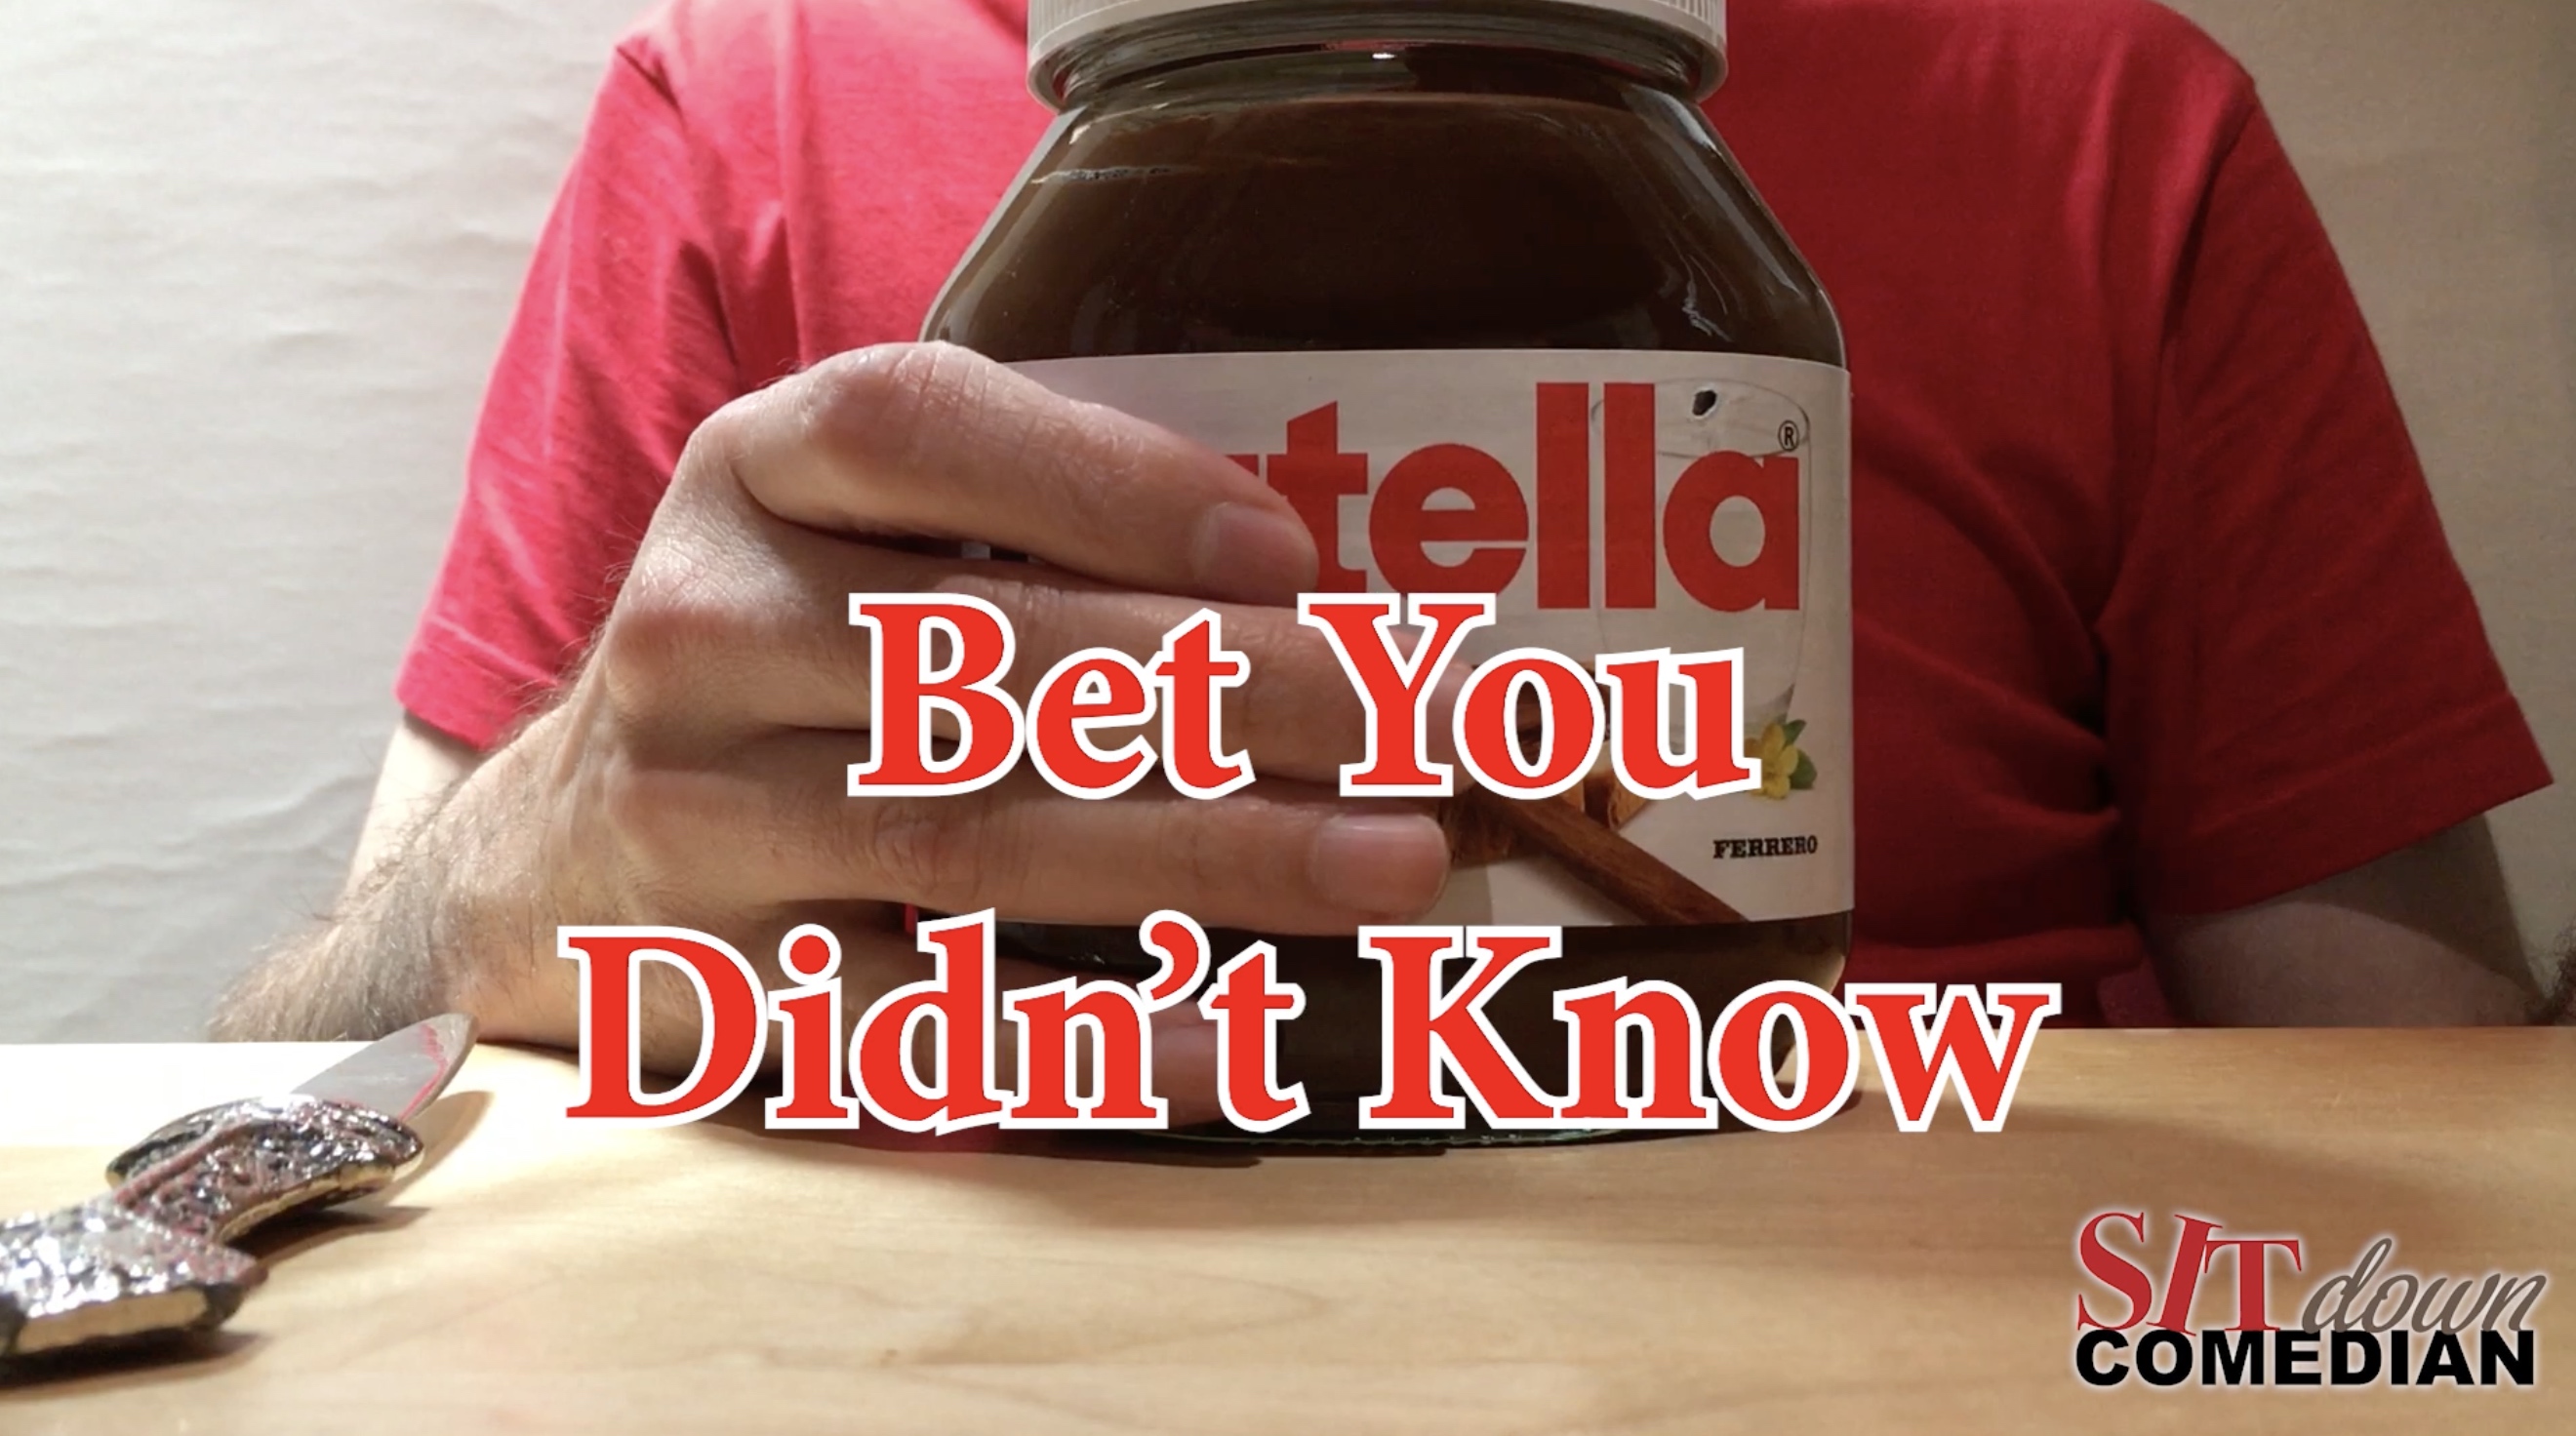 Video vom Sit down Comedina, zu sehen ein Glas von …tella in der Hand, Aufschrift auf Video: Bet You Didn’t Know.